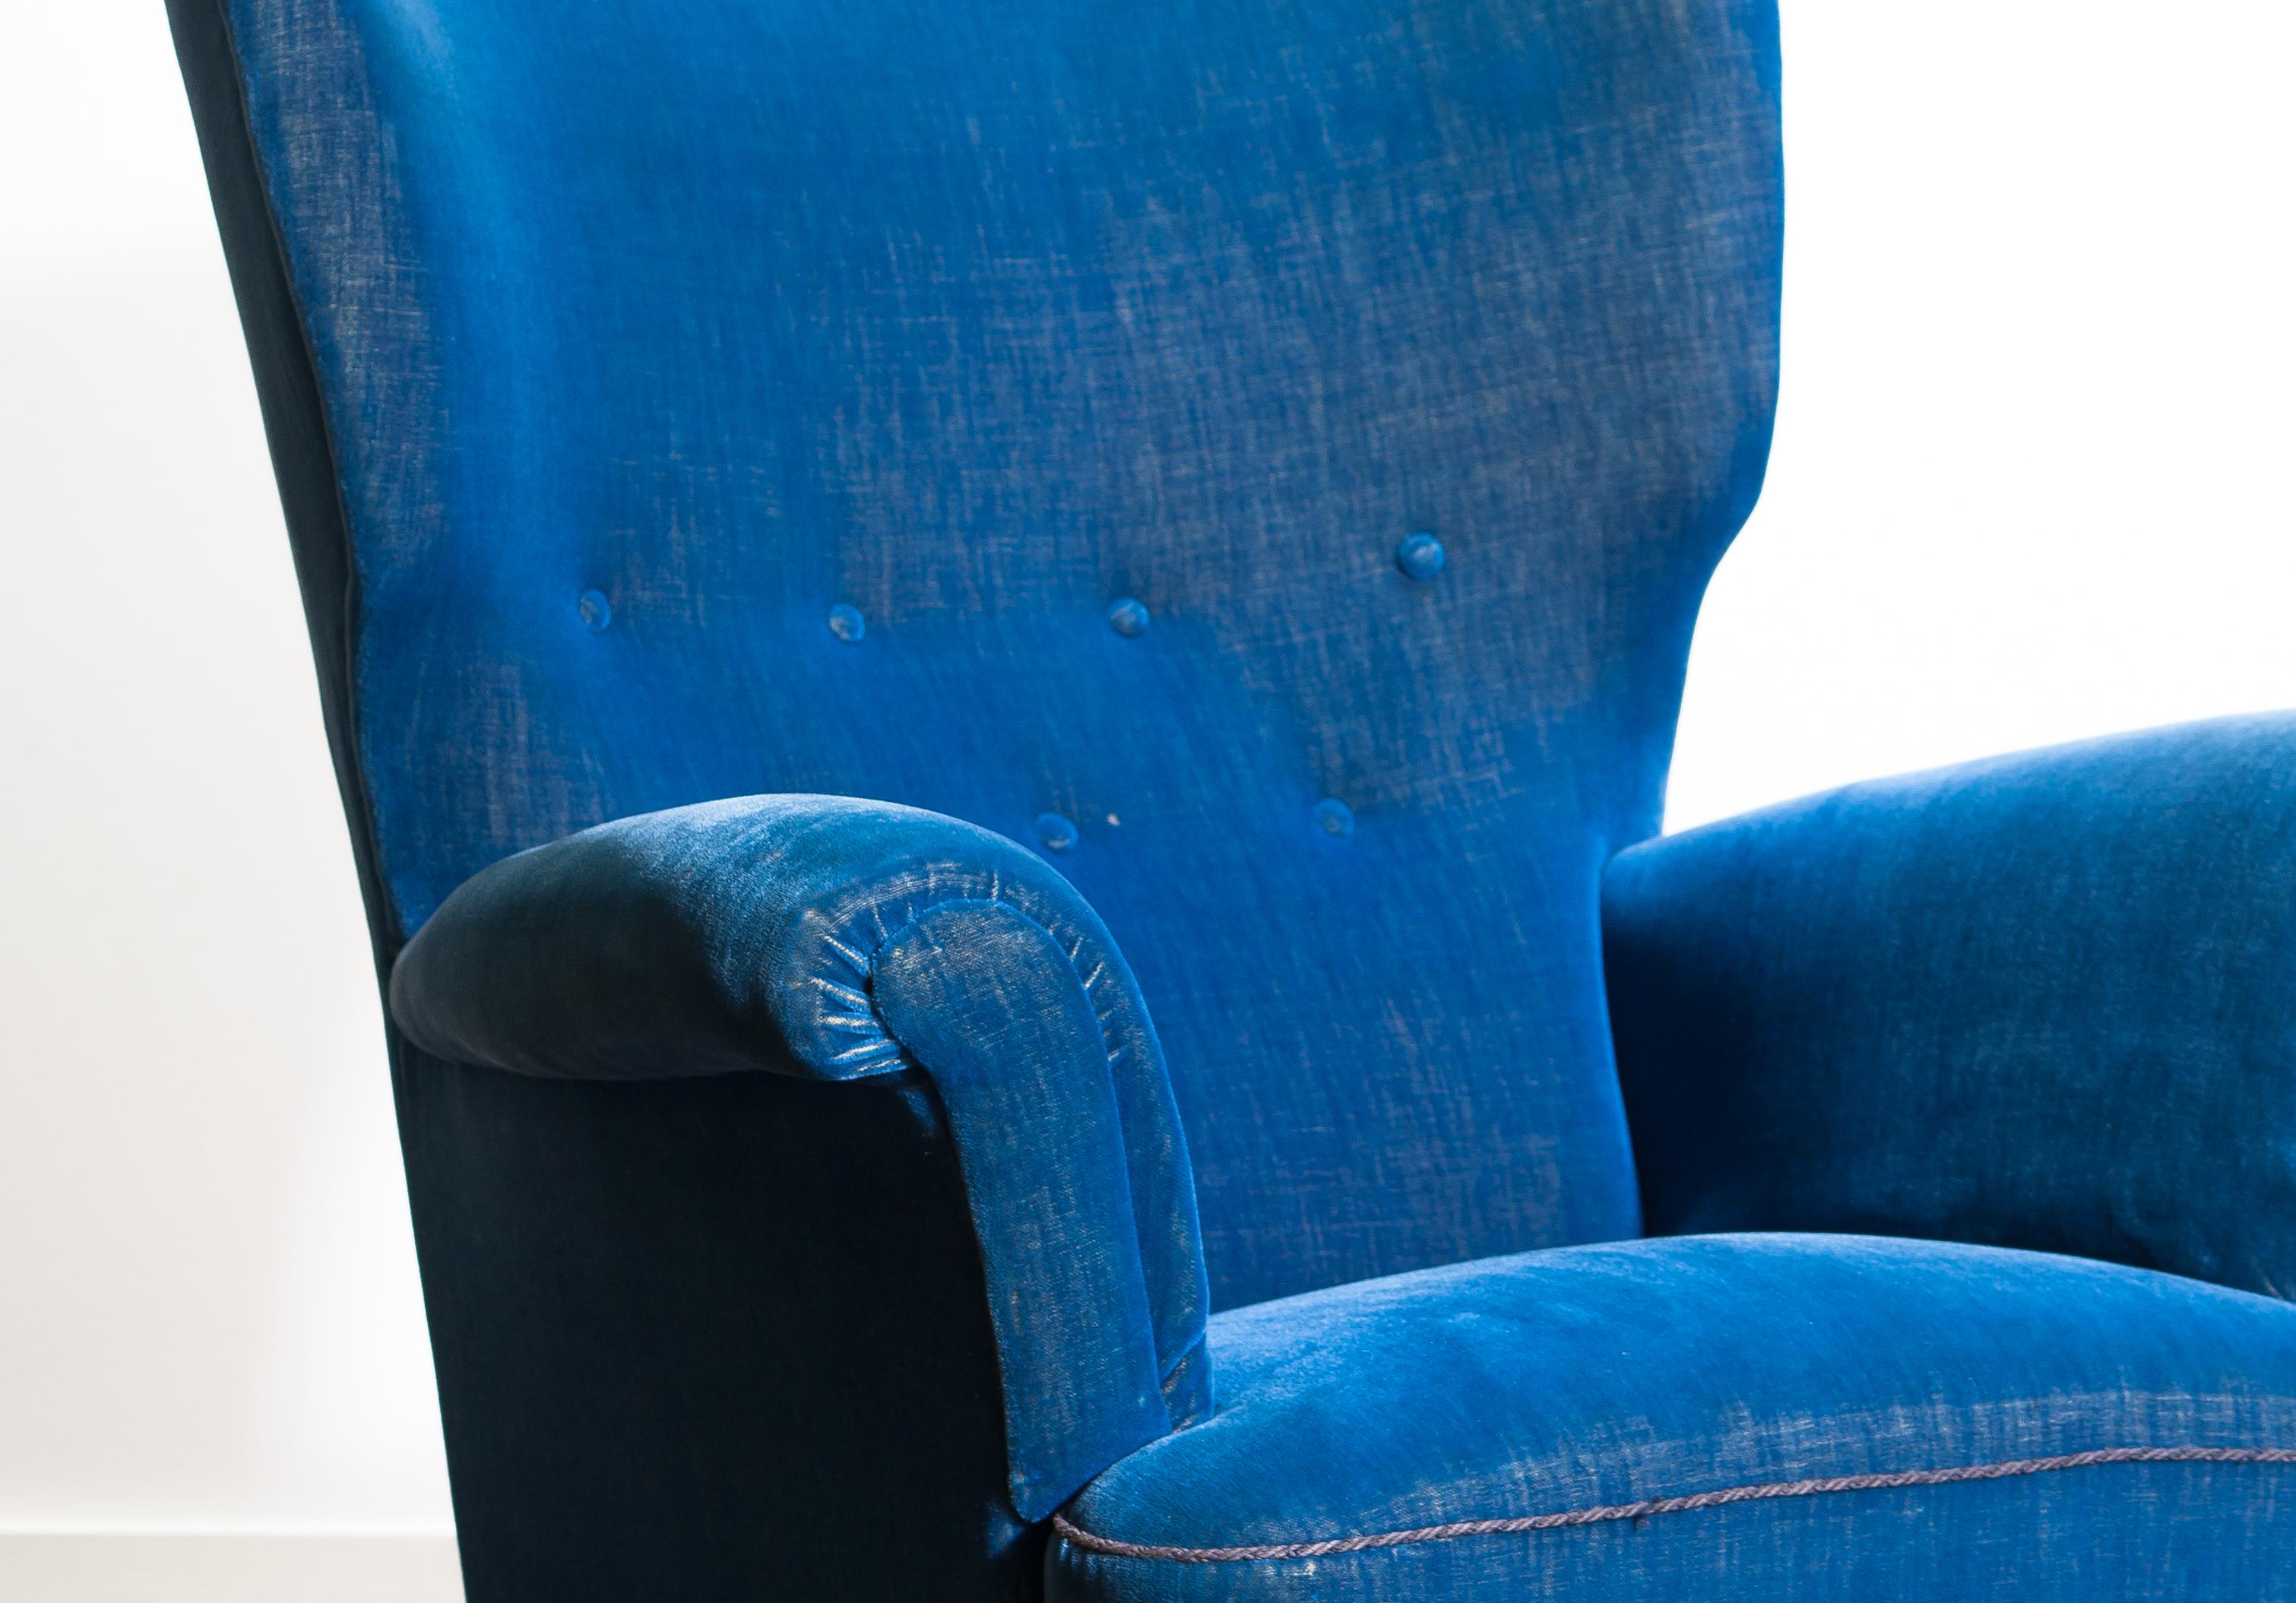 Swedish Scandinavian Royal Blue Velvet Wingback Chair, 1930-1940